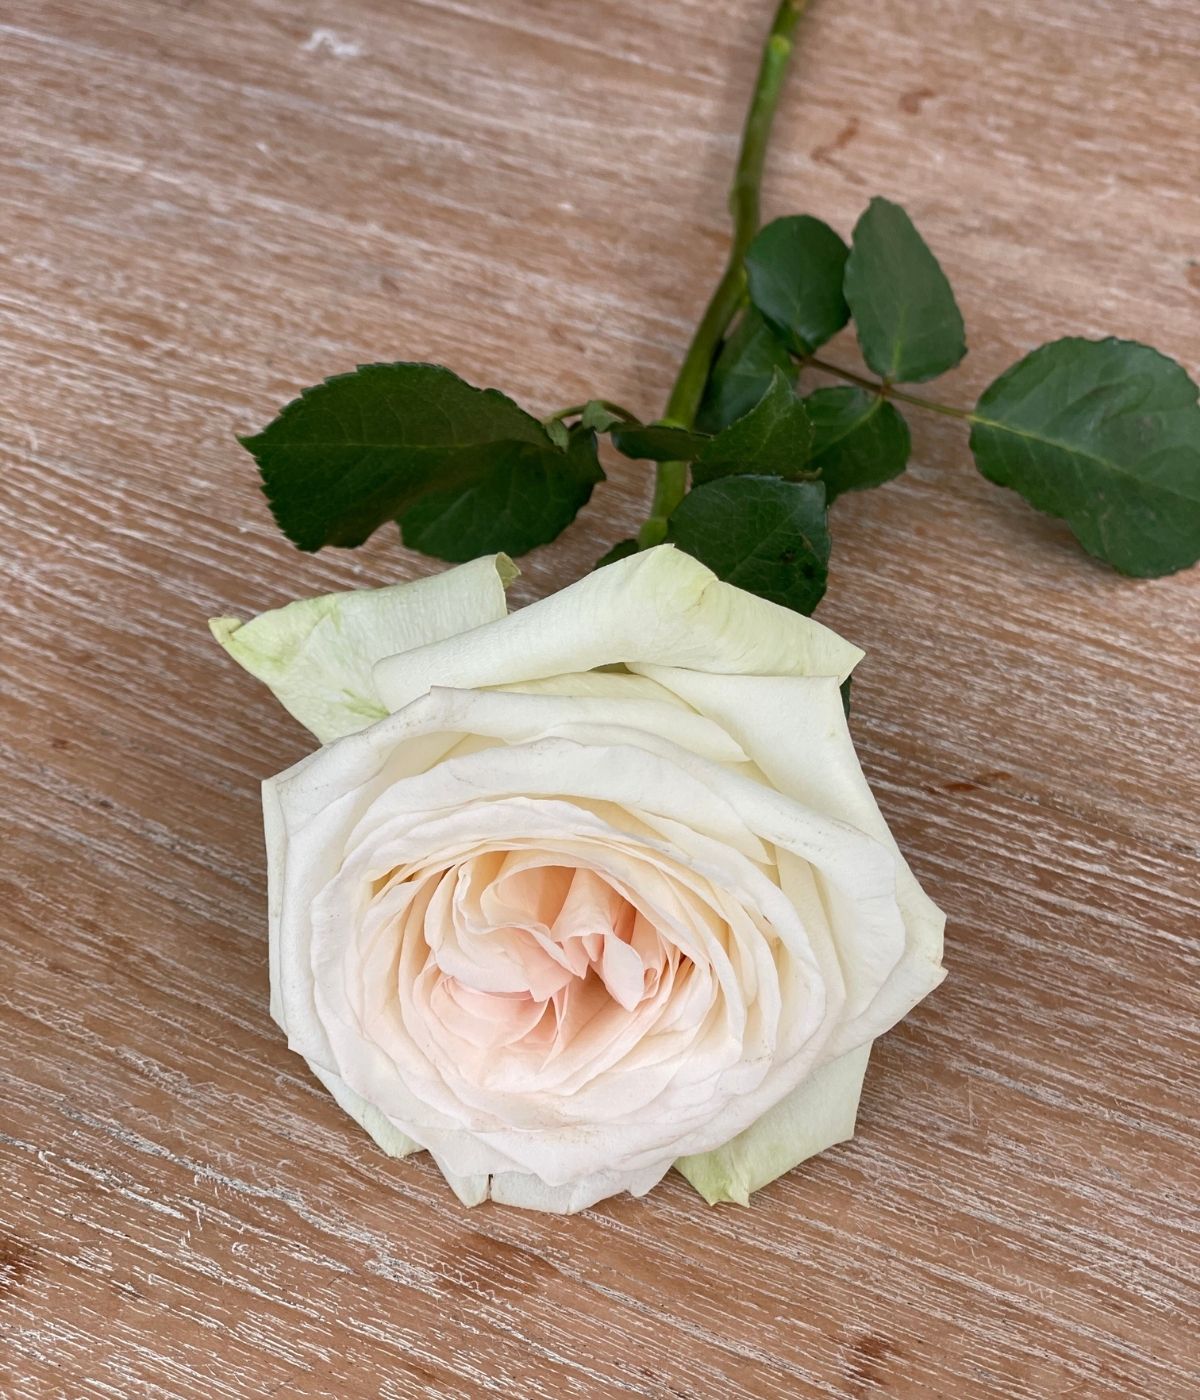 White O'Hara roses on Thursd - Kenya 2600 US